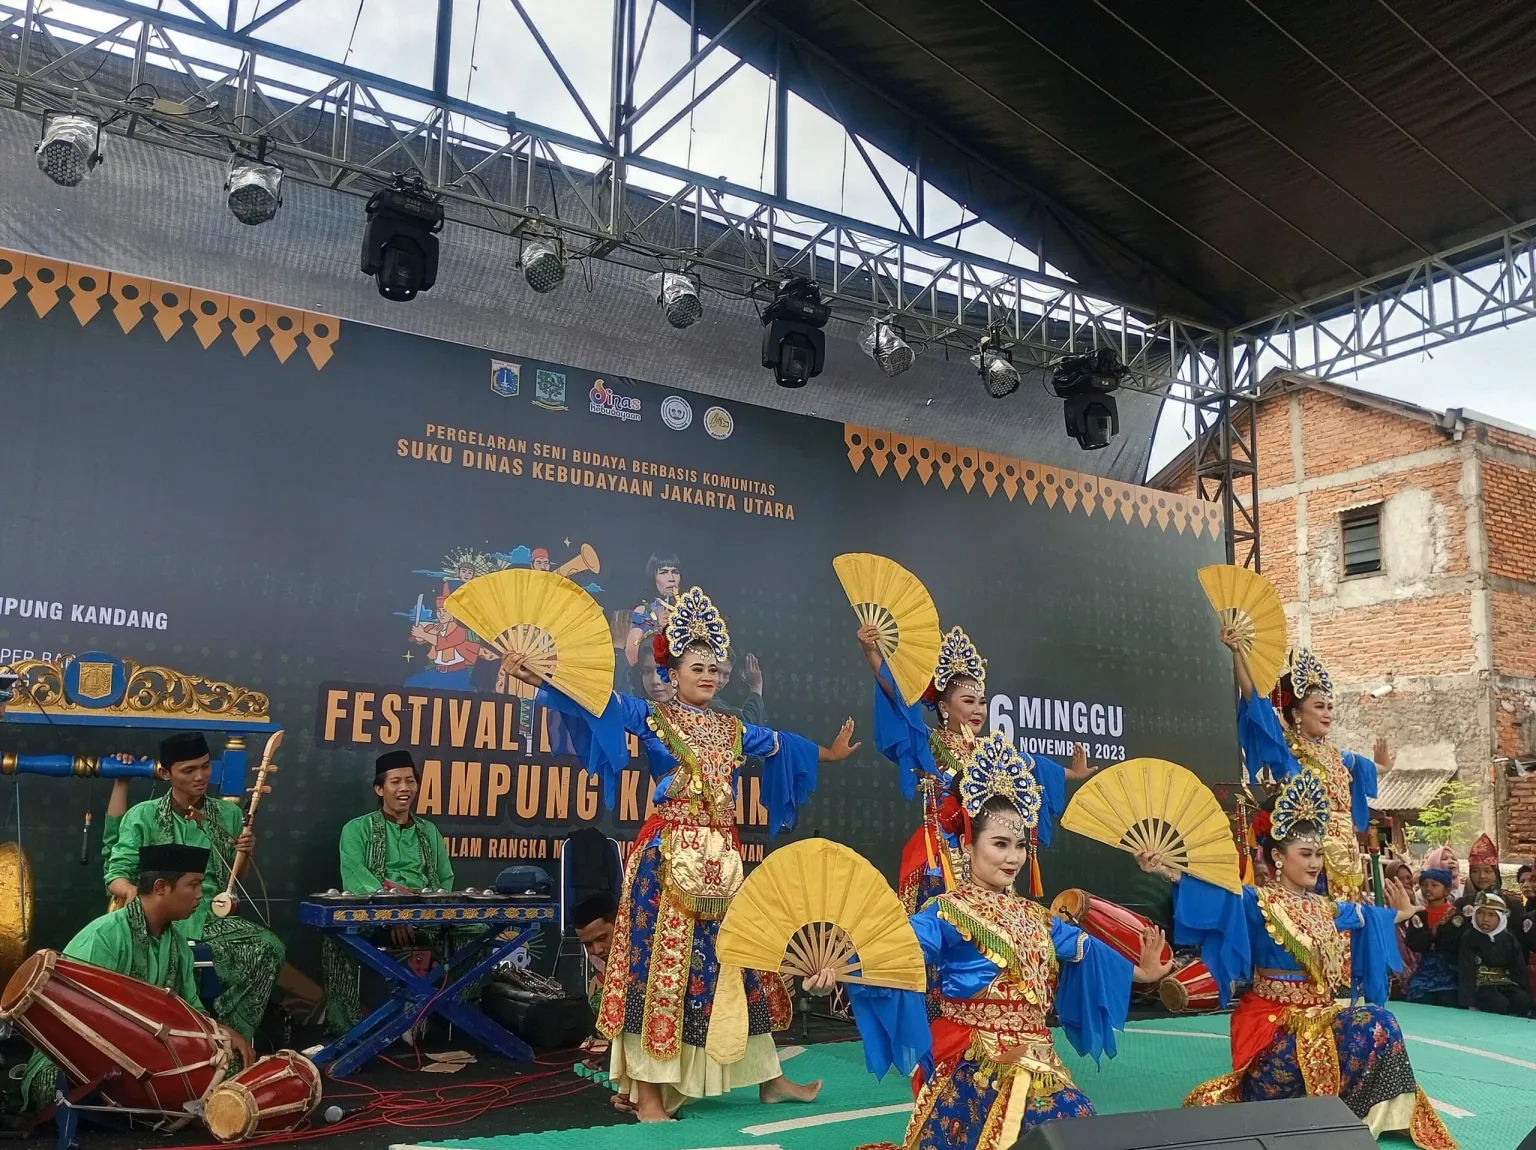 North Jakarta Cultural Sub-Department Presents Kampung Kandang Cultural Festival